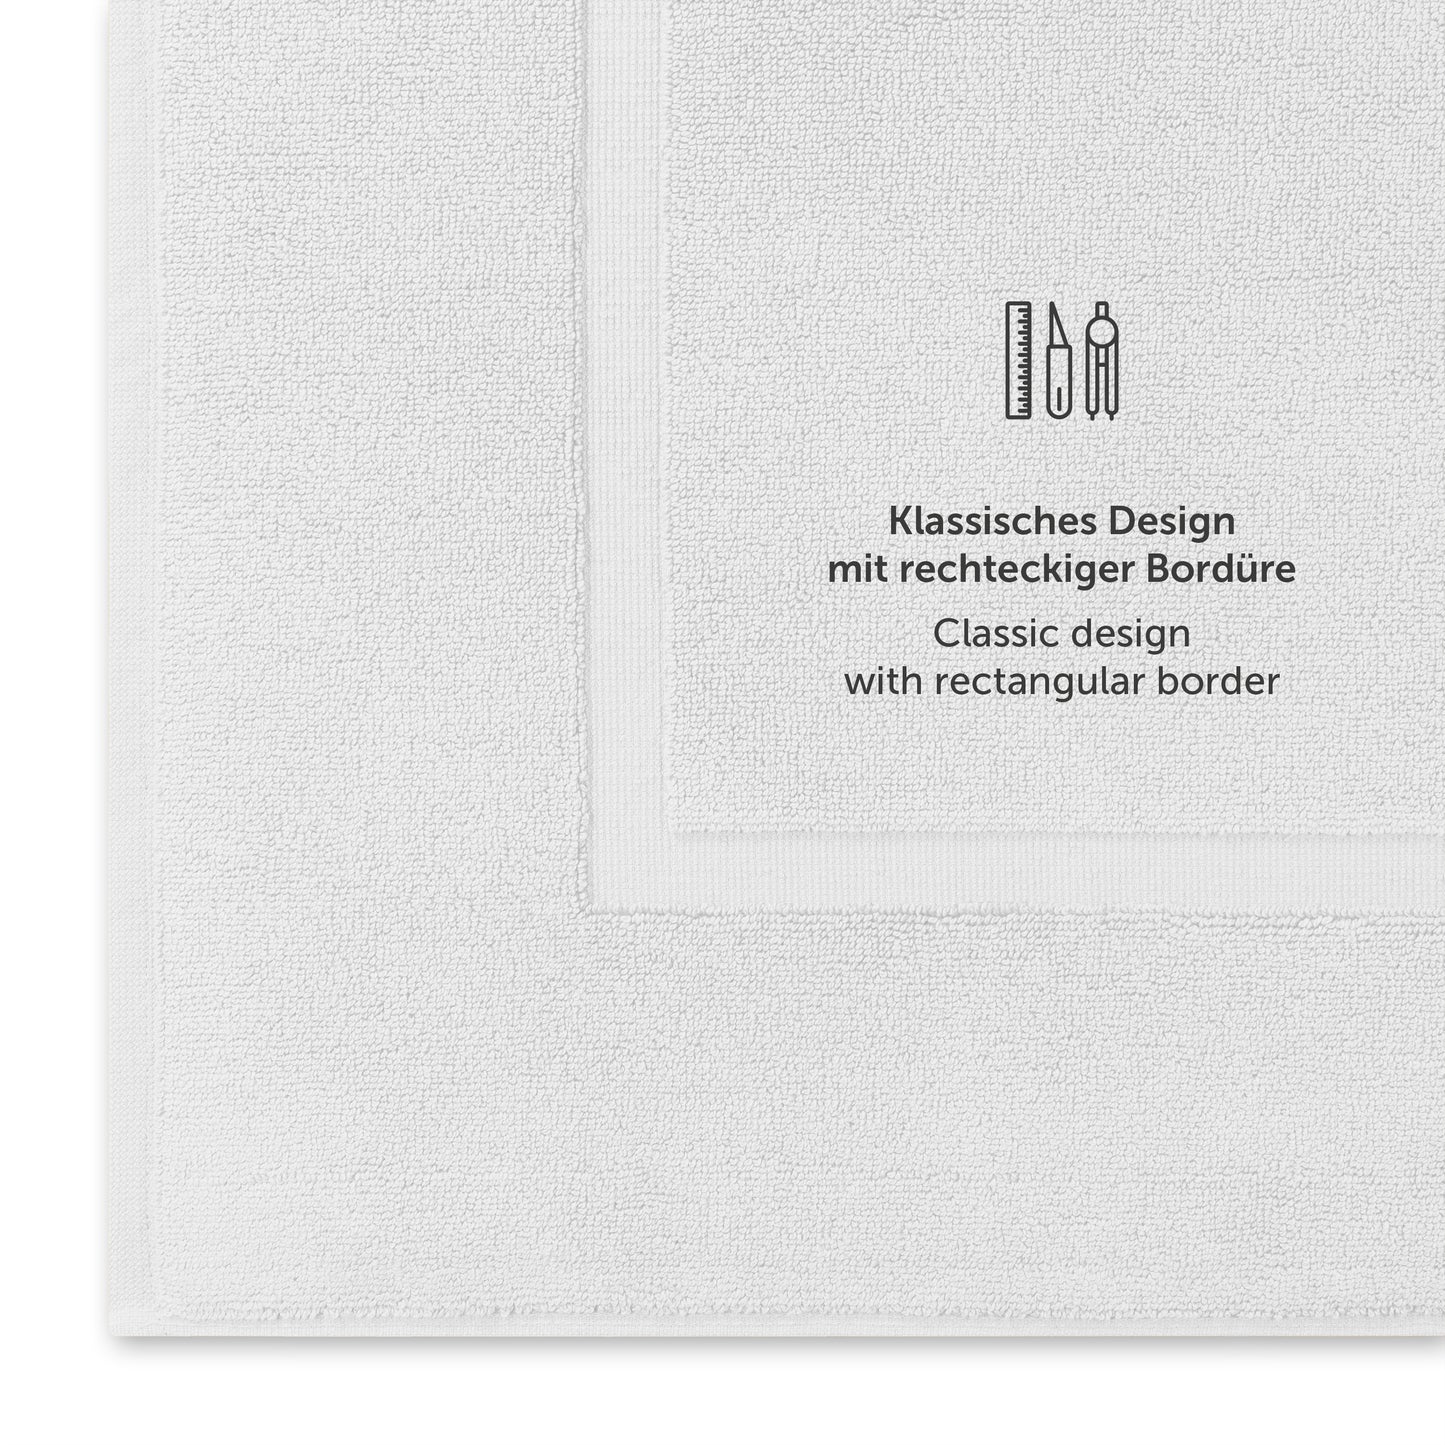 Weisses Handtuch mit klassischem Design und Bordürendetail.